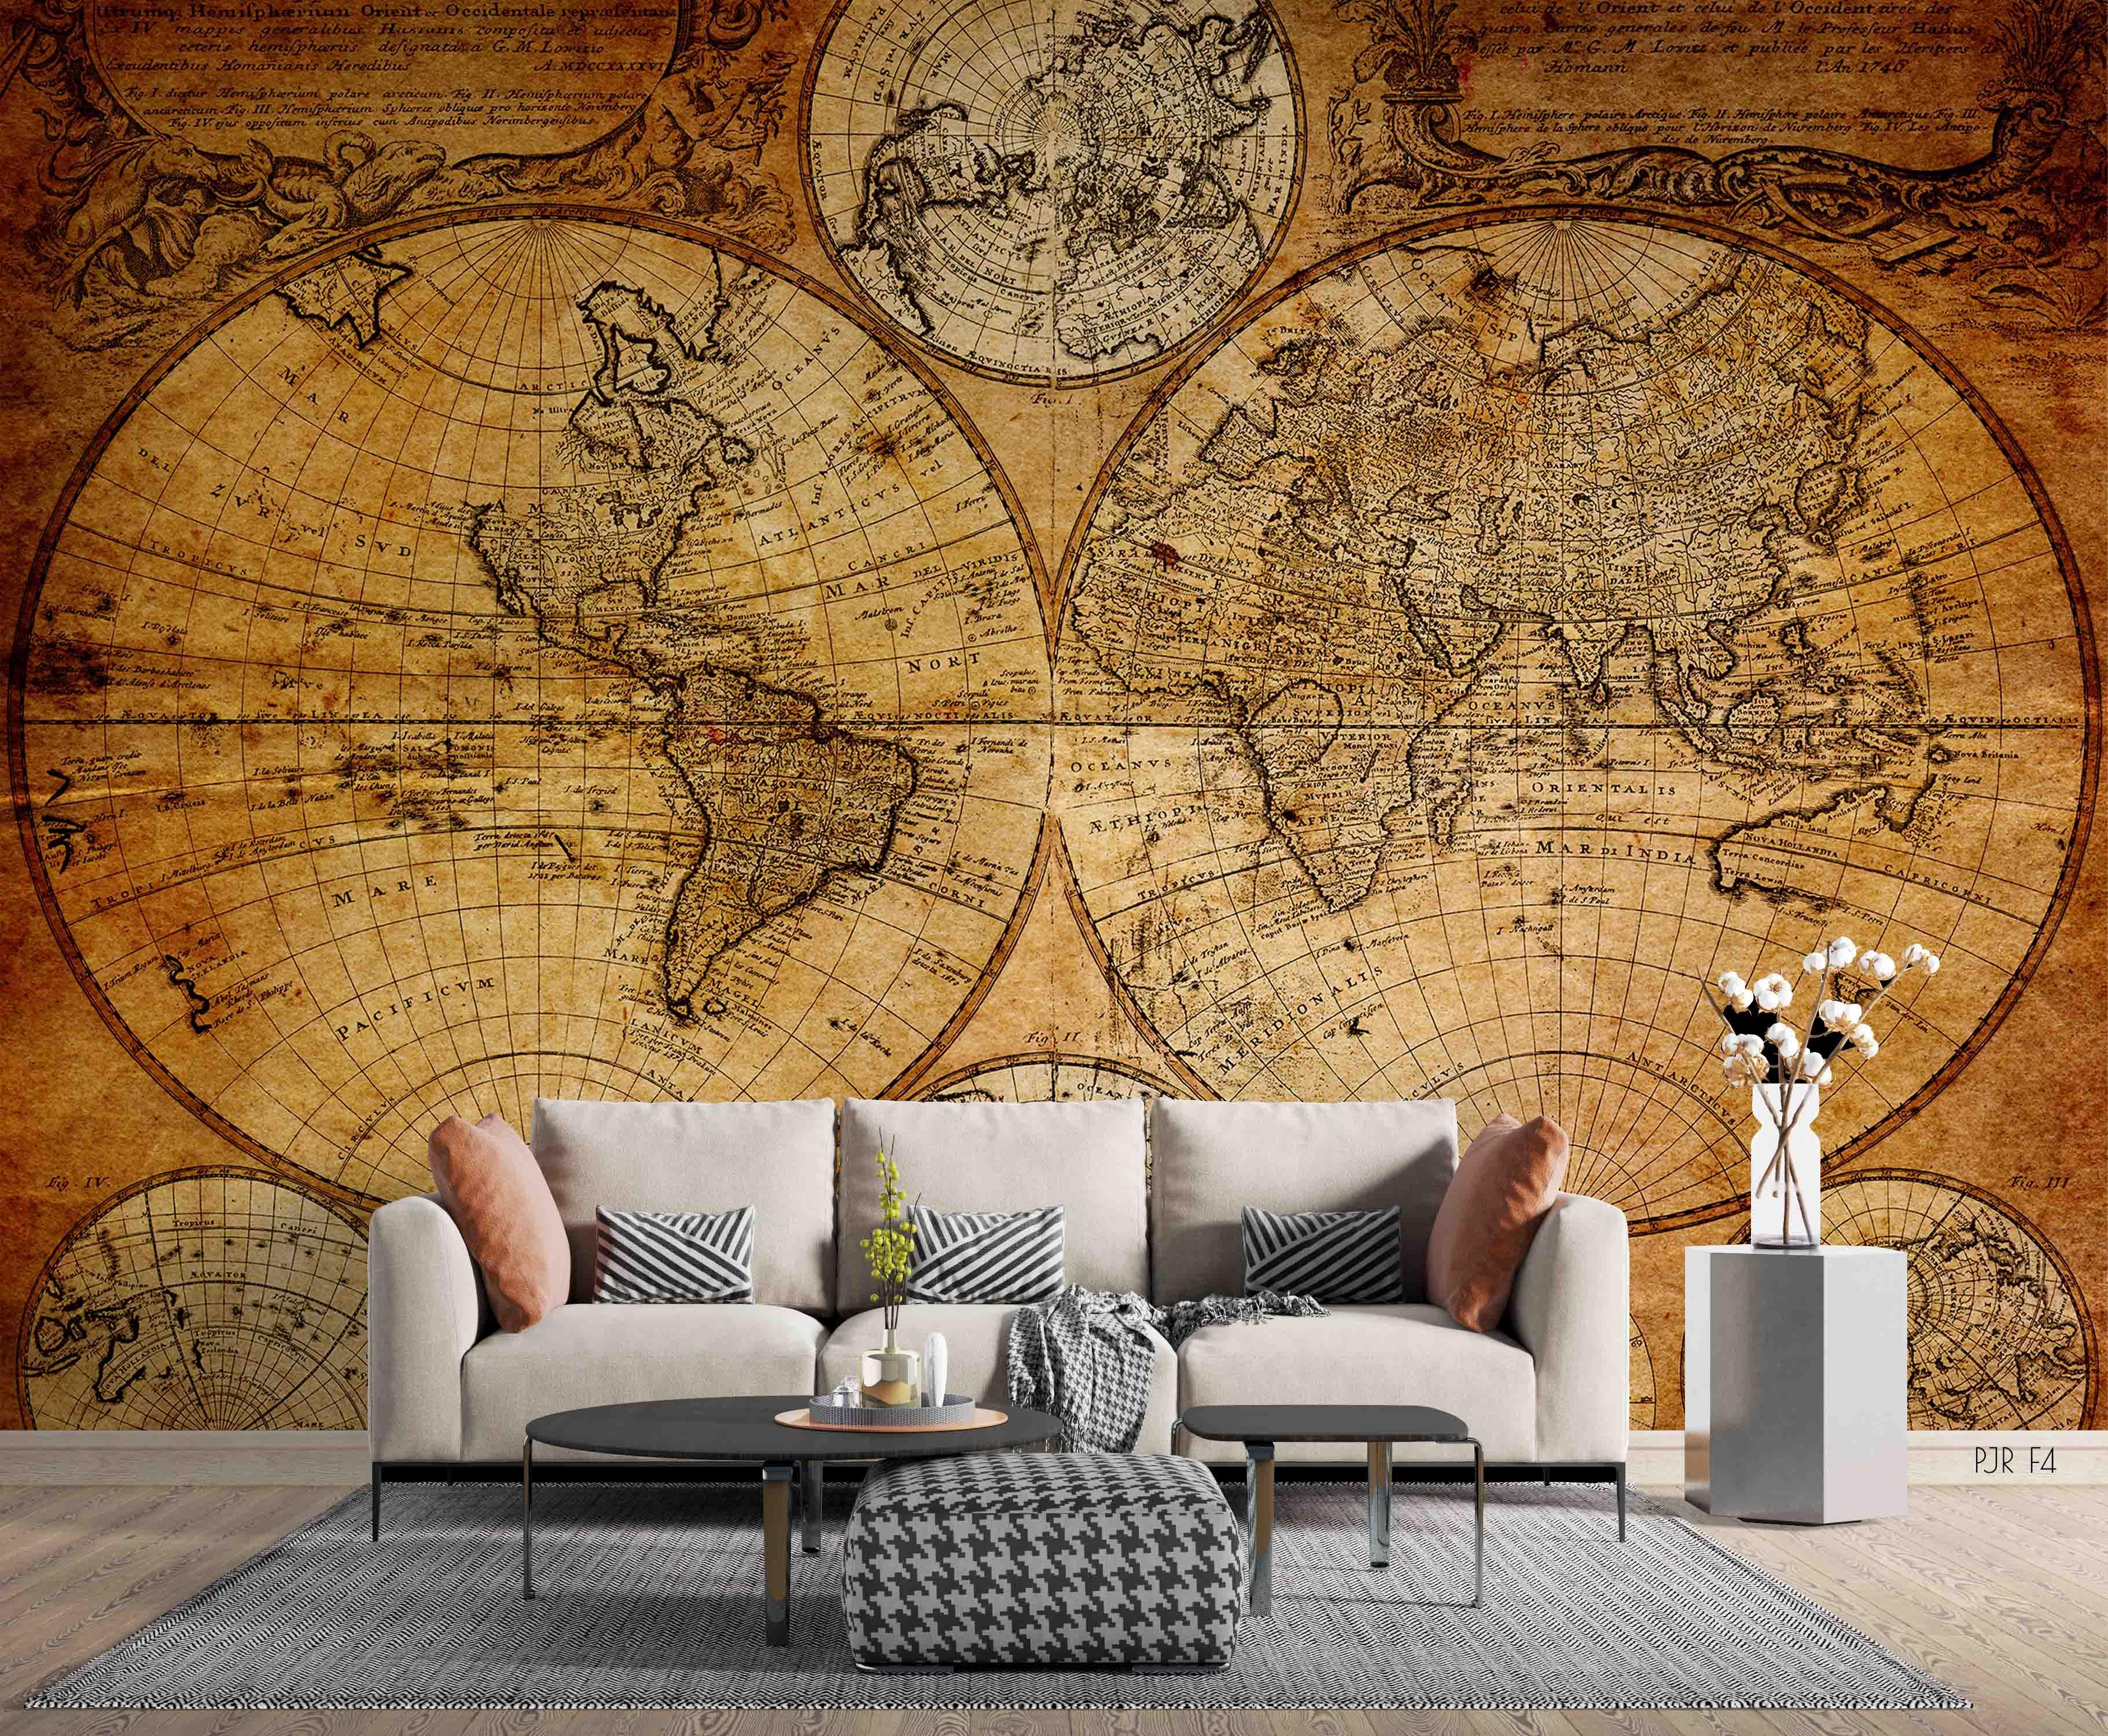 3D Retro World Map Wall Mural Wallpaper LQH 8- Jess Art Decoration